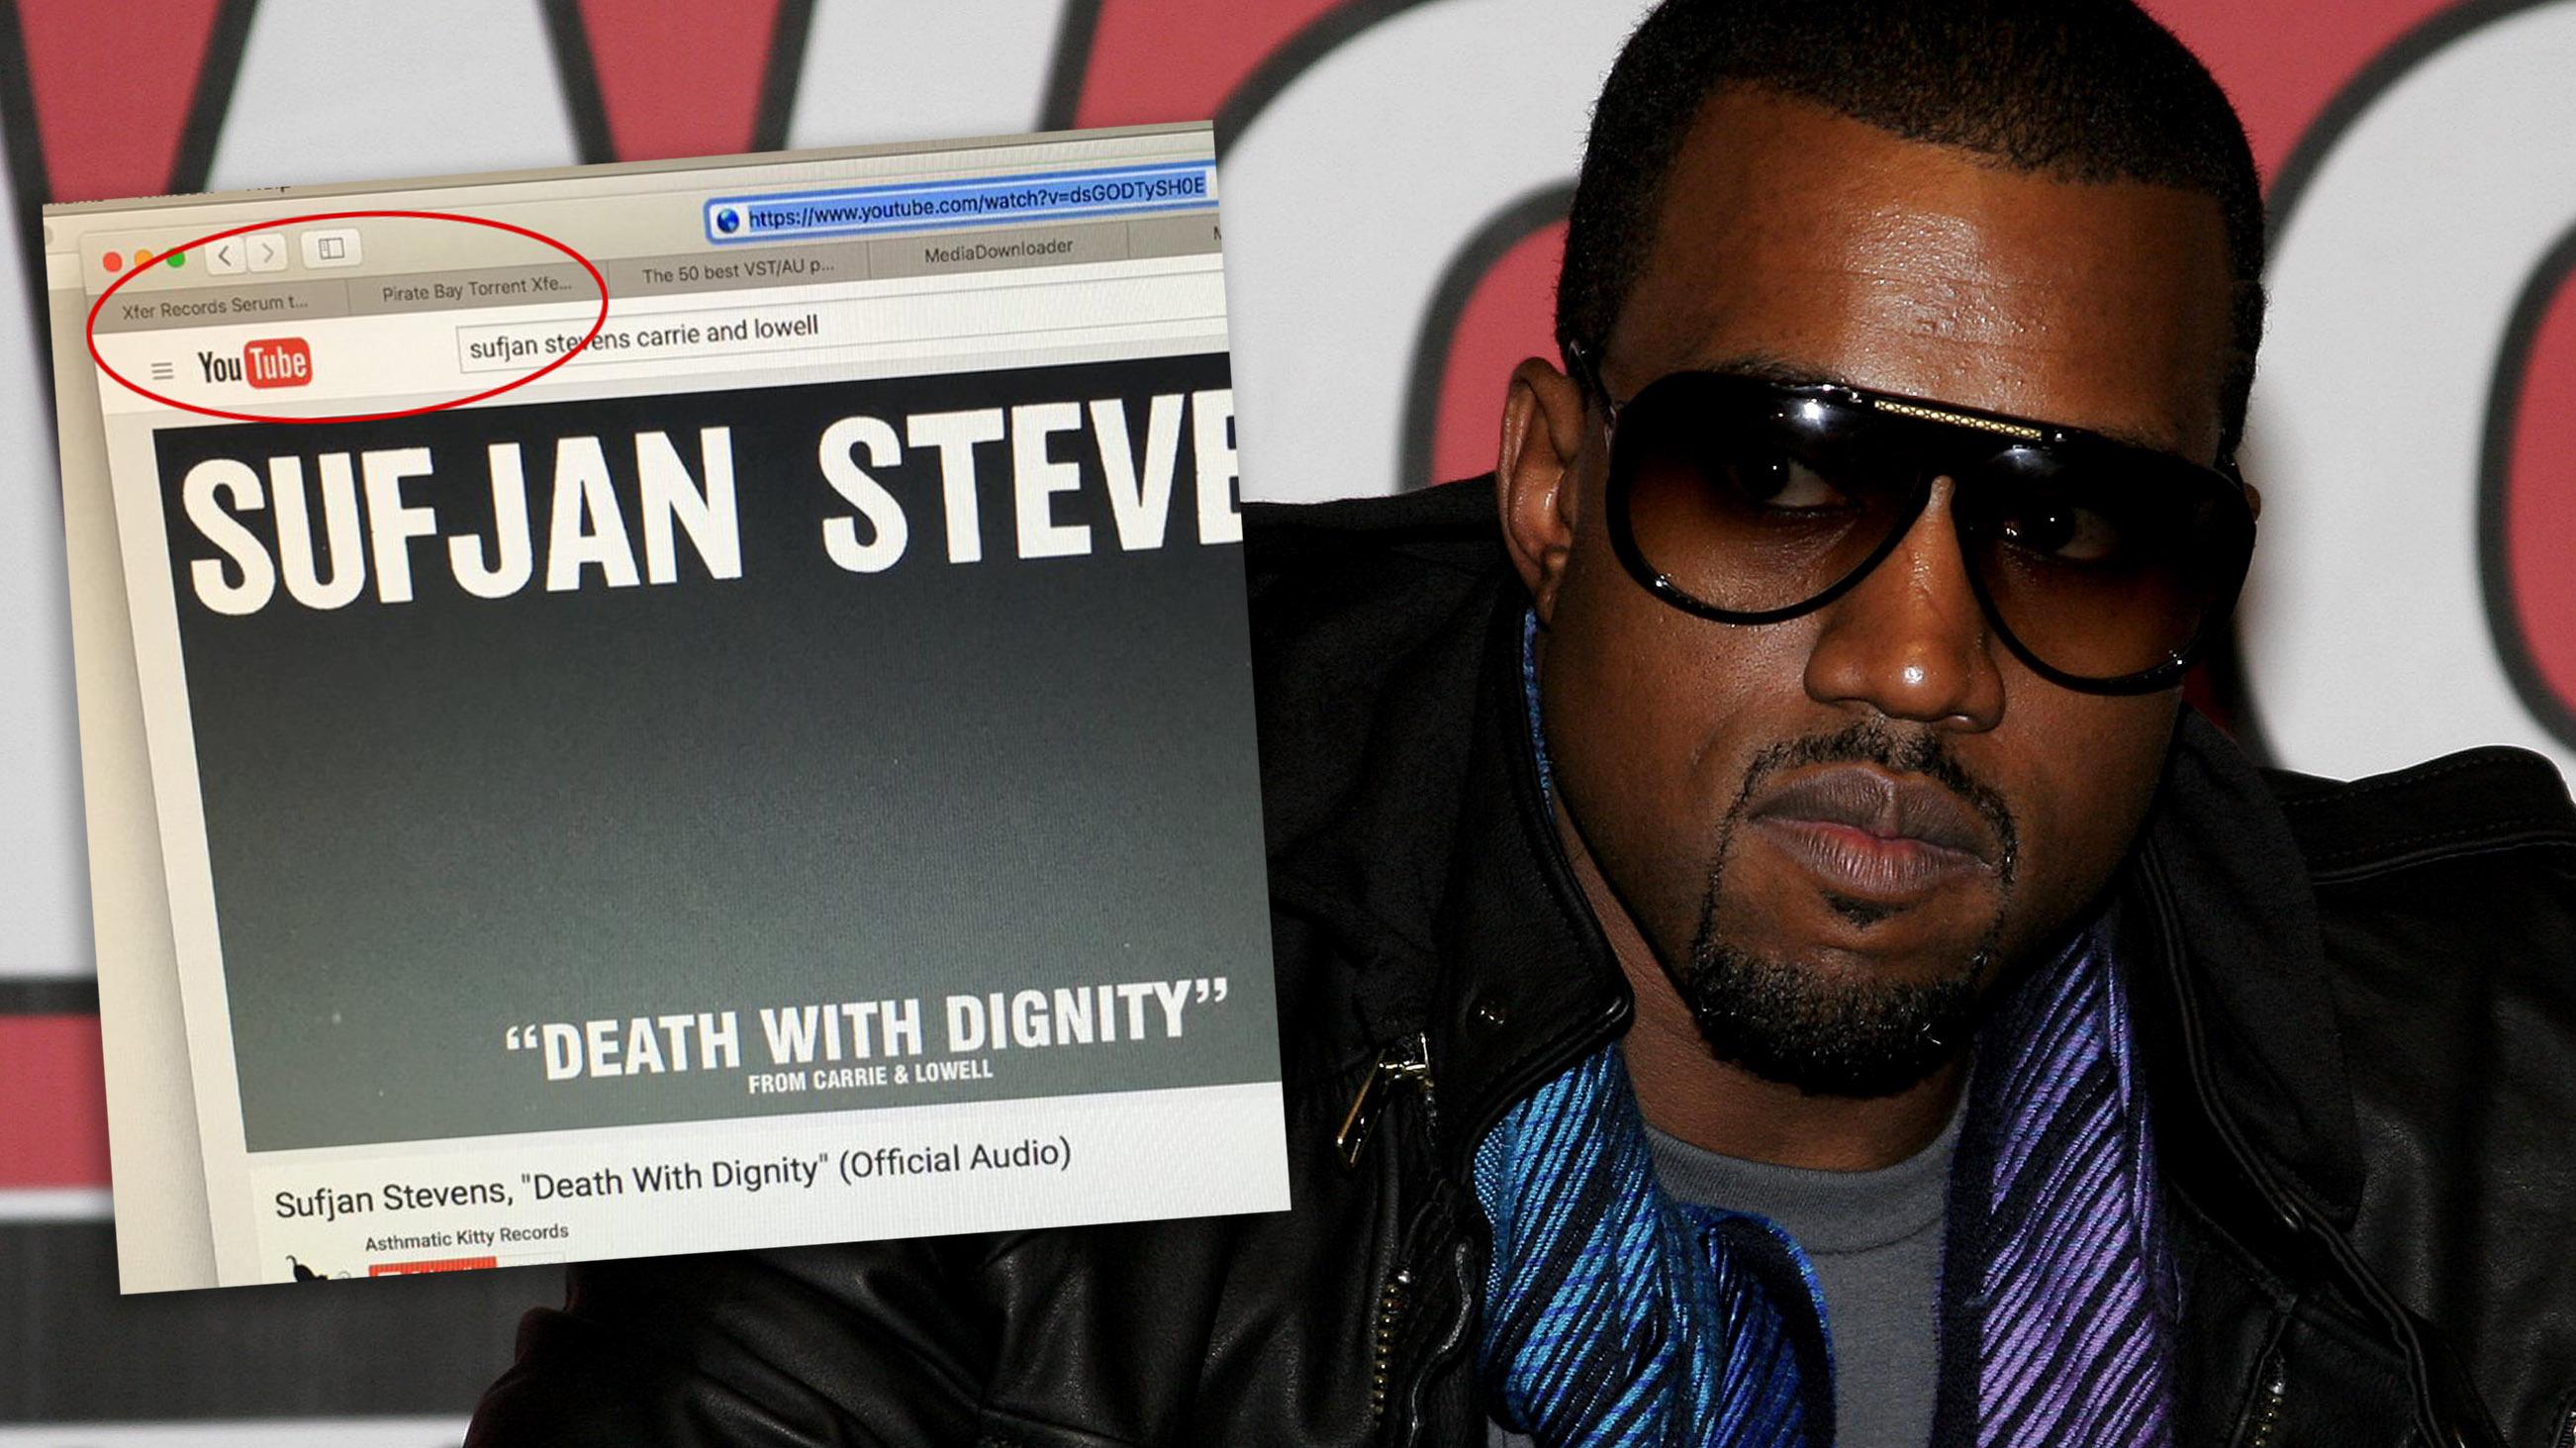 Avslører dette bildet at Kanye West bruker The Pirate Bay selv?